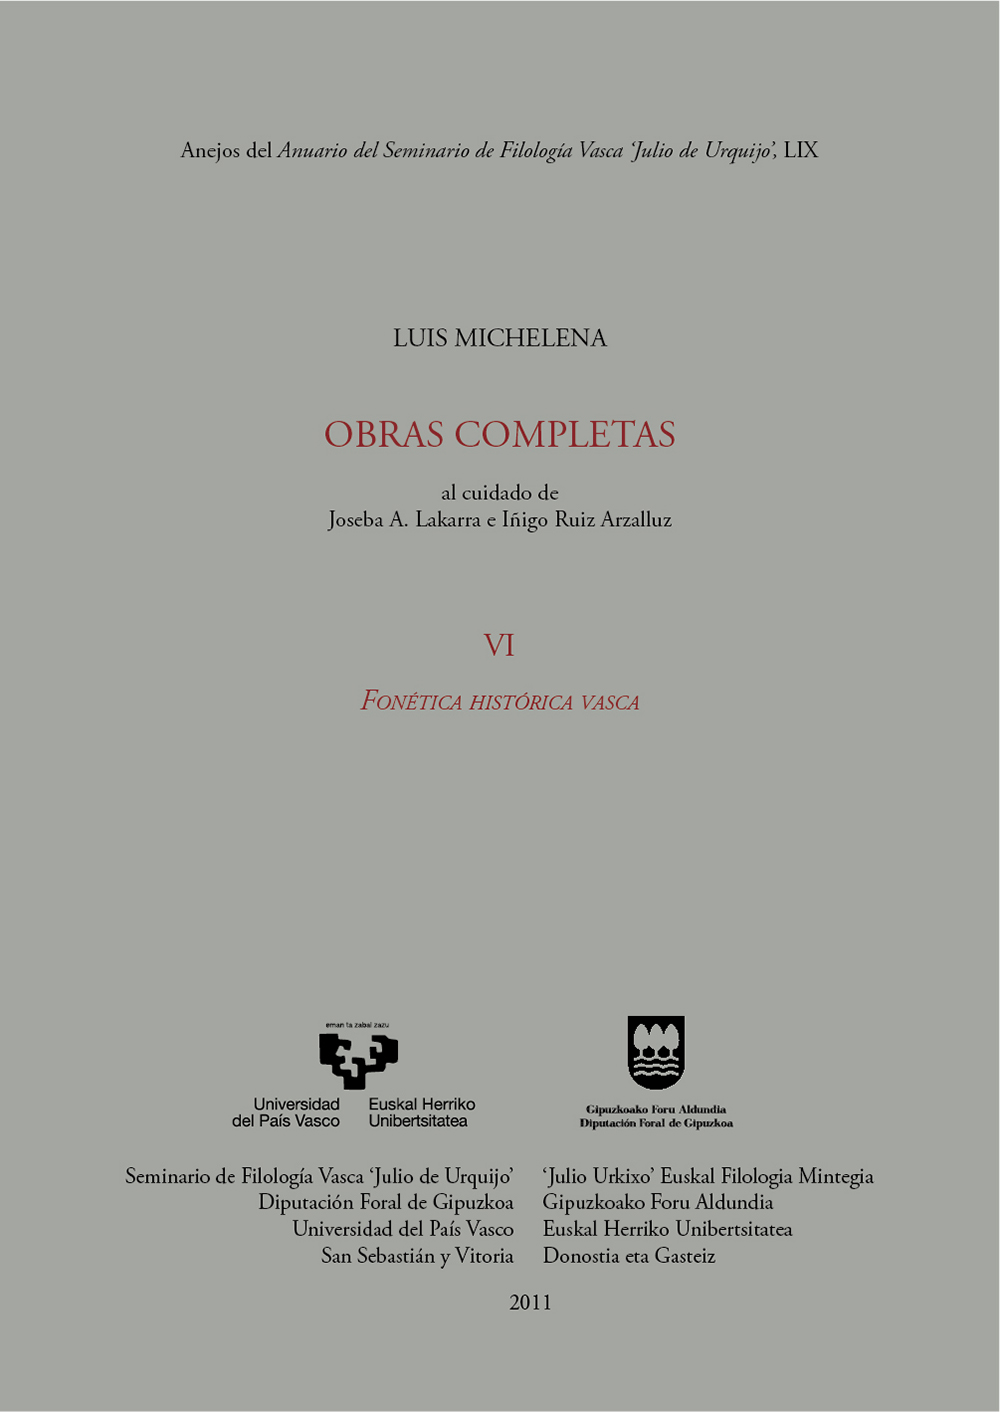 Luis Michelena. Obras completas. VI. Fonética histórica vasca